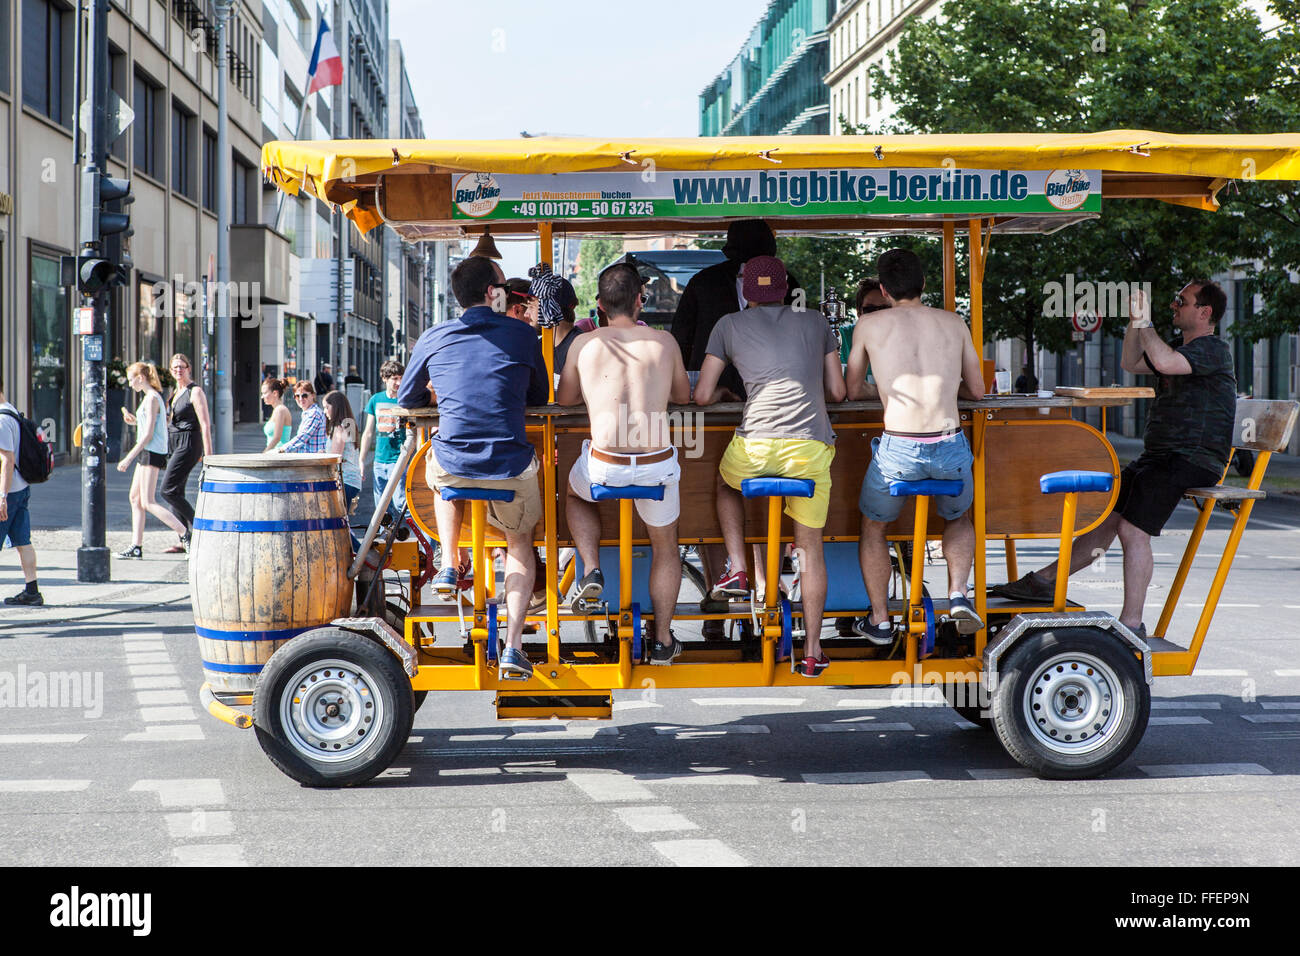 big bike Berlin with men drinking beer Stock Photo